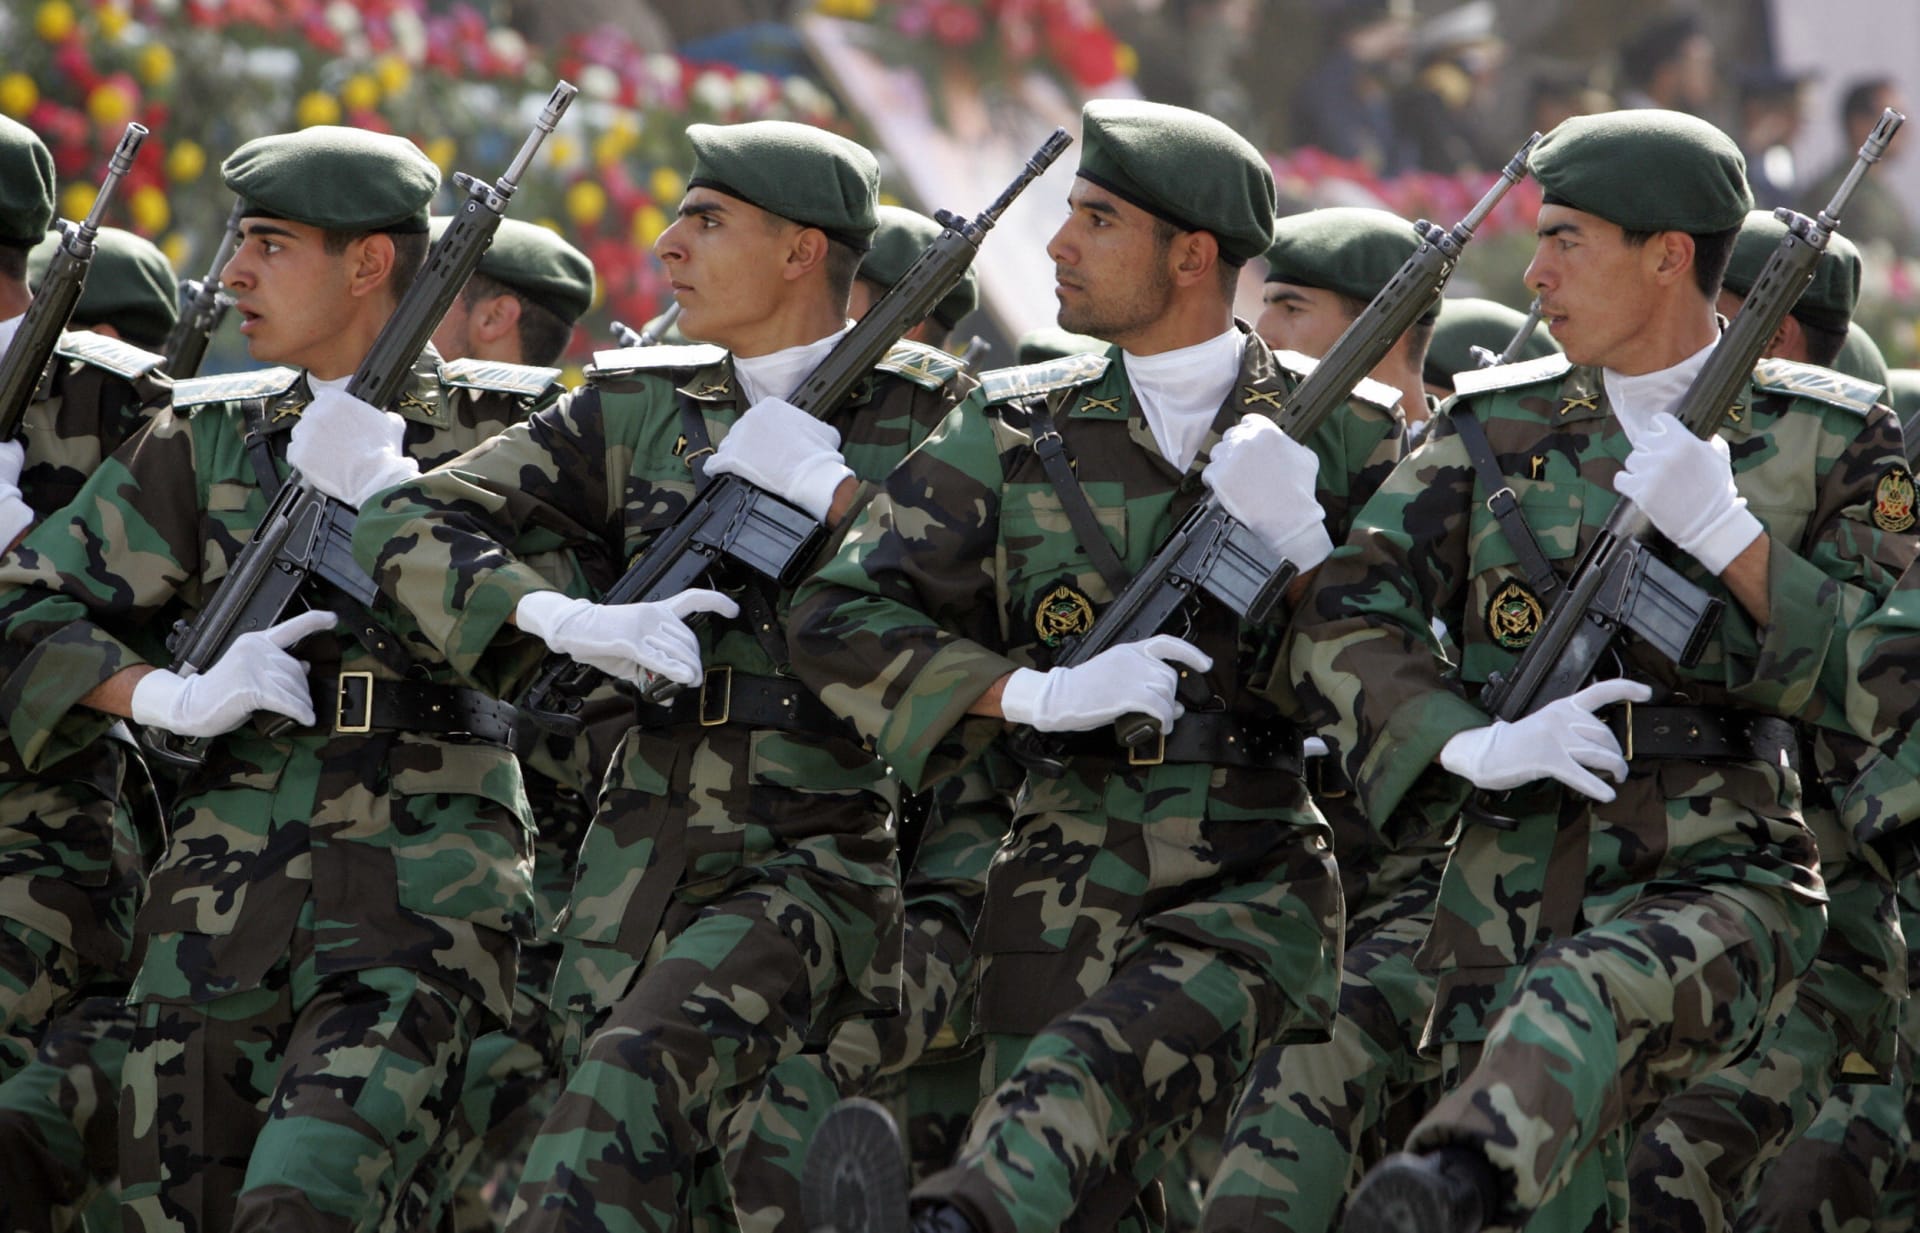 إيران تبعث رسالة لقادة العالم الإسلامي "بمناسبة عيد الفطر": قواتنا المسلحة مستعدة للتعاون مع الدول الصديقة